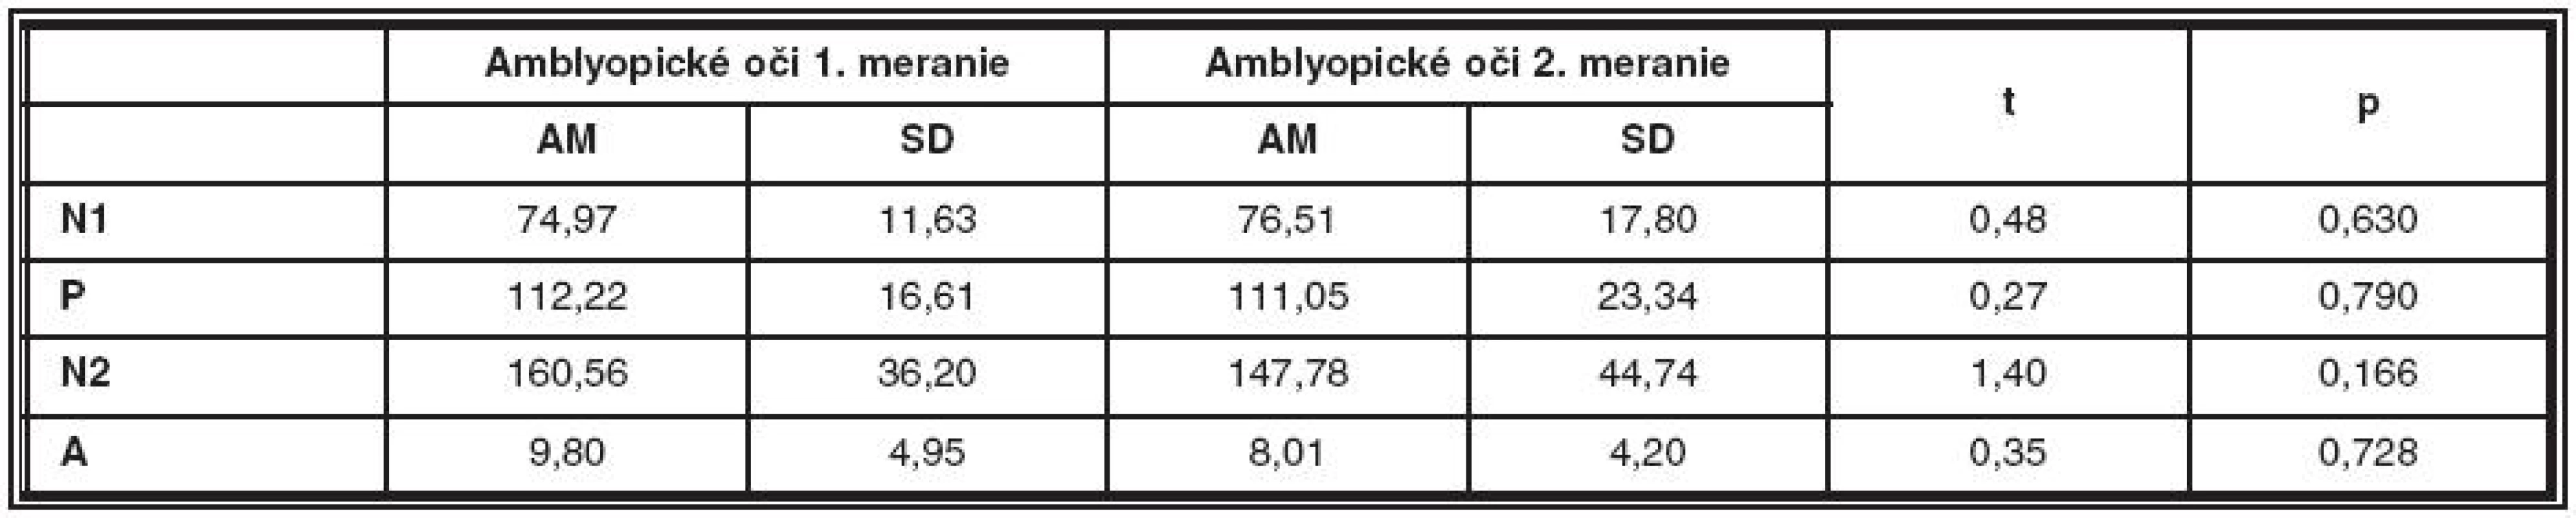 Porovnanie latencií a amplitúdy NPN komplexu prvého merania amblyopických očí a druhého merania amblyopických očí
